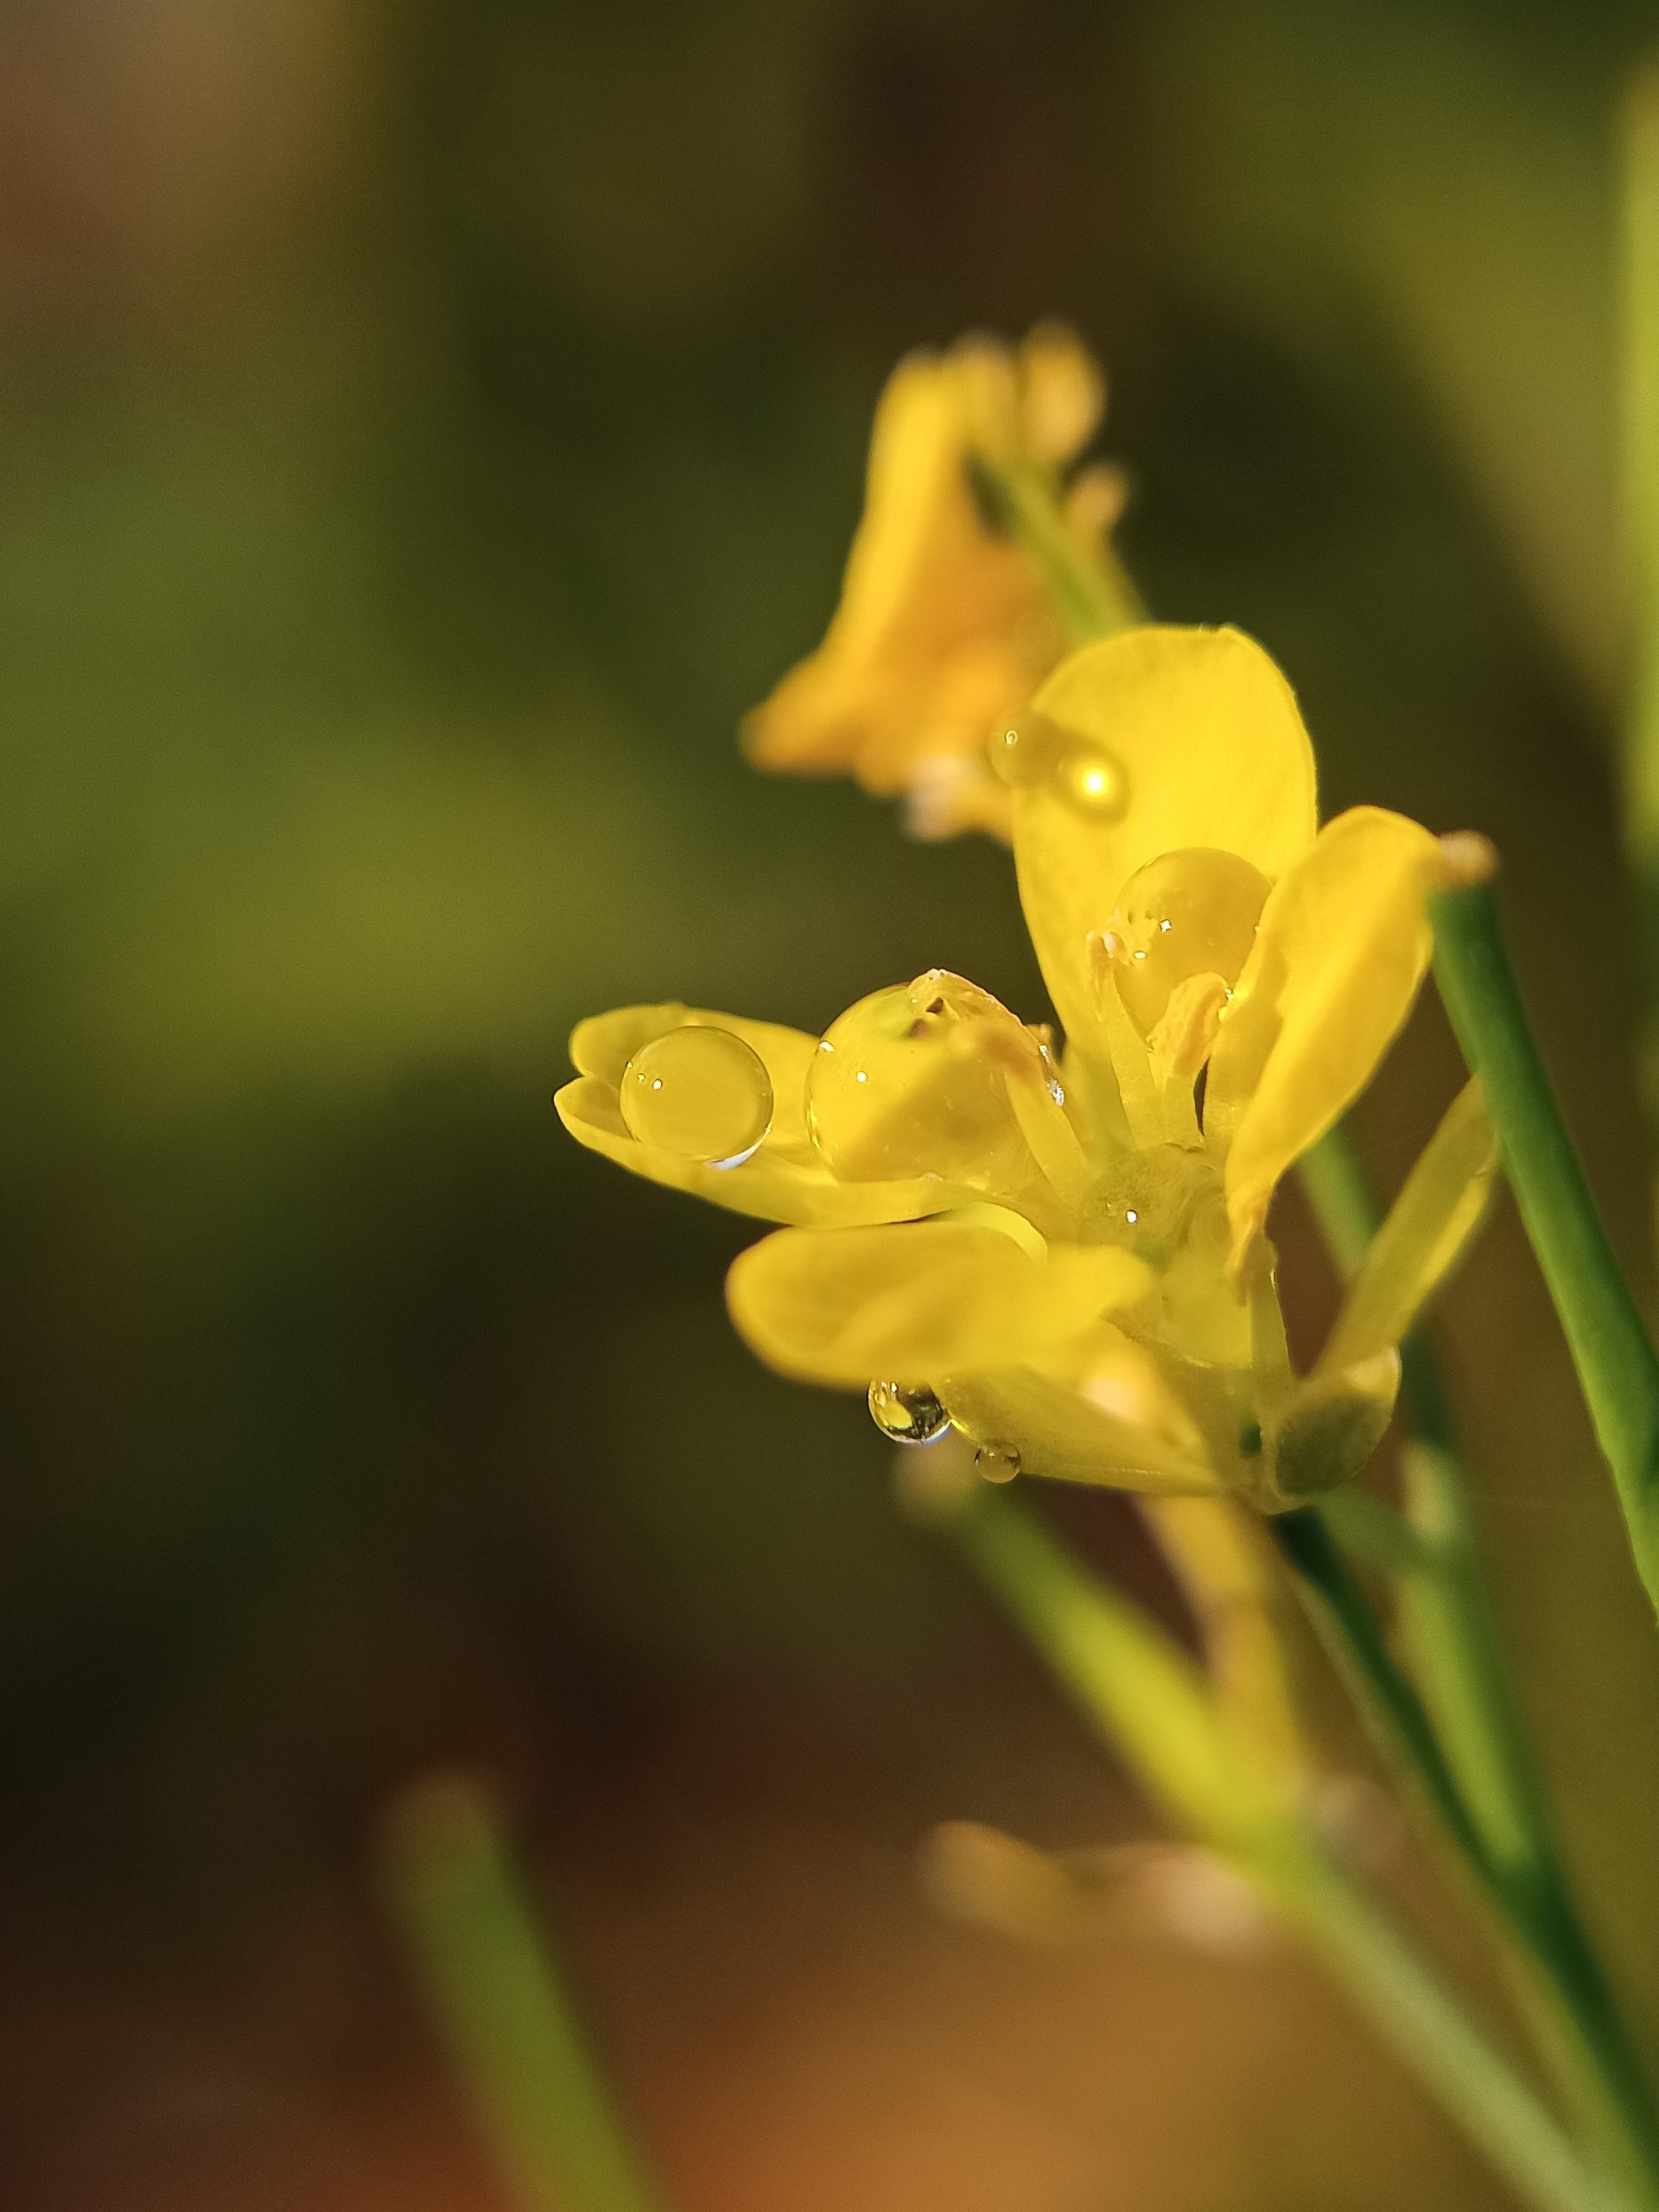 Waterdrops on mustard flower